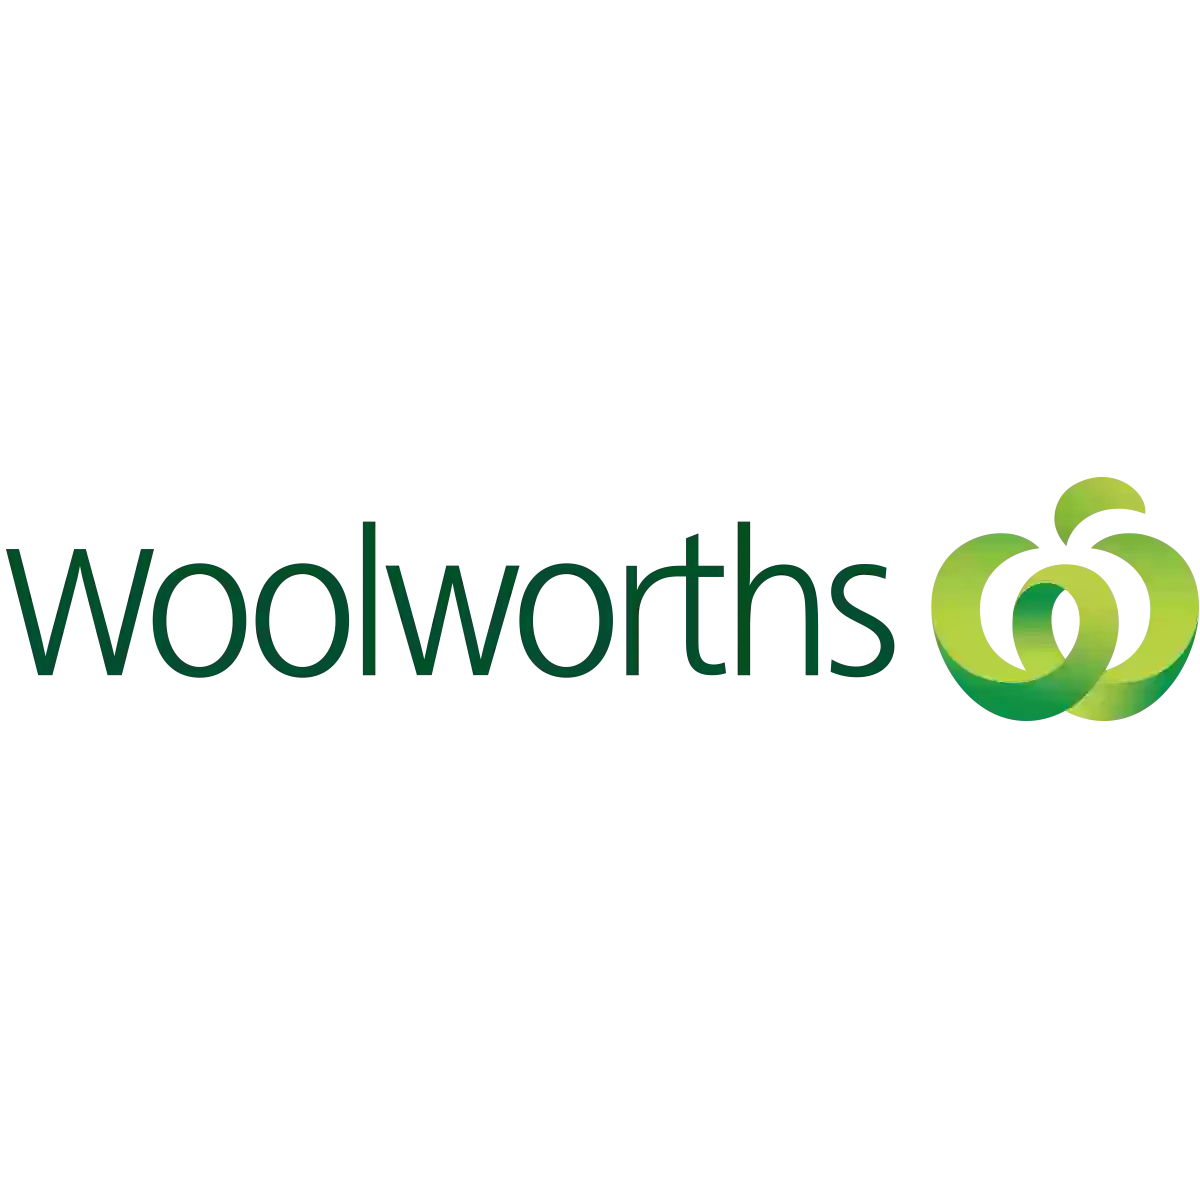 Woolworths Tweed City